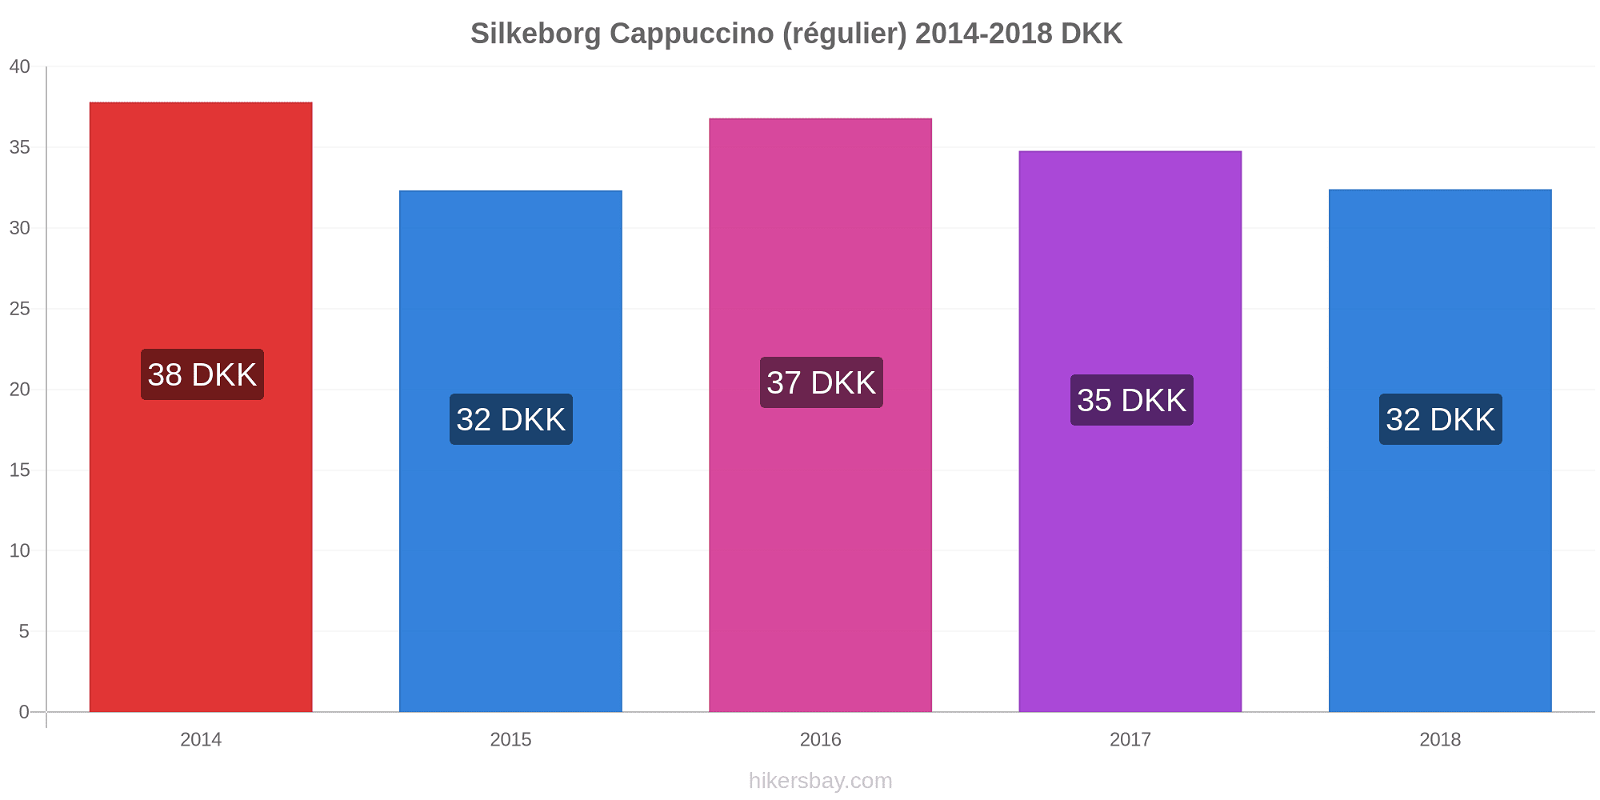 Silkeborg changements de prix Cappuccino (régulier) hikersbay.com